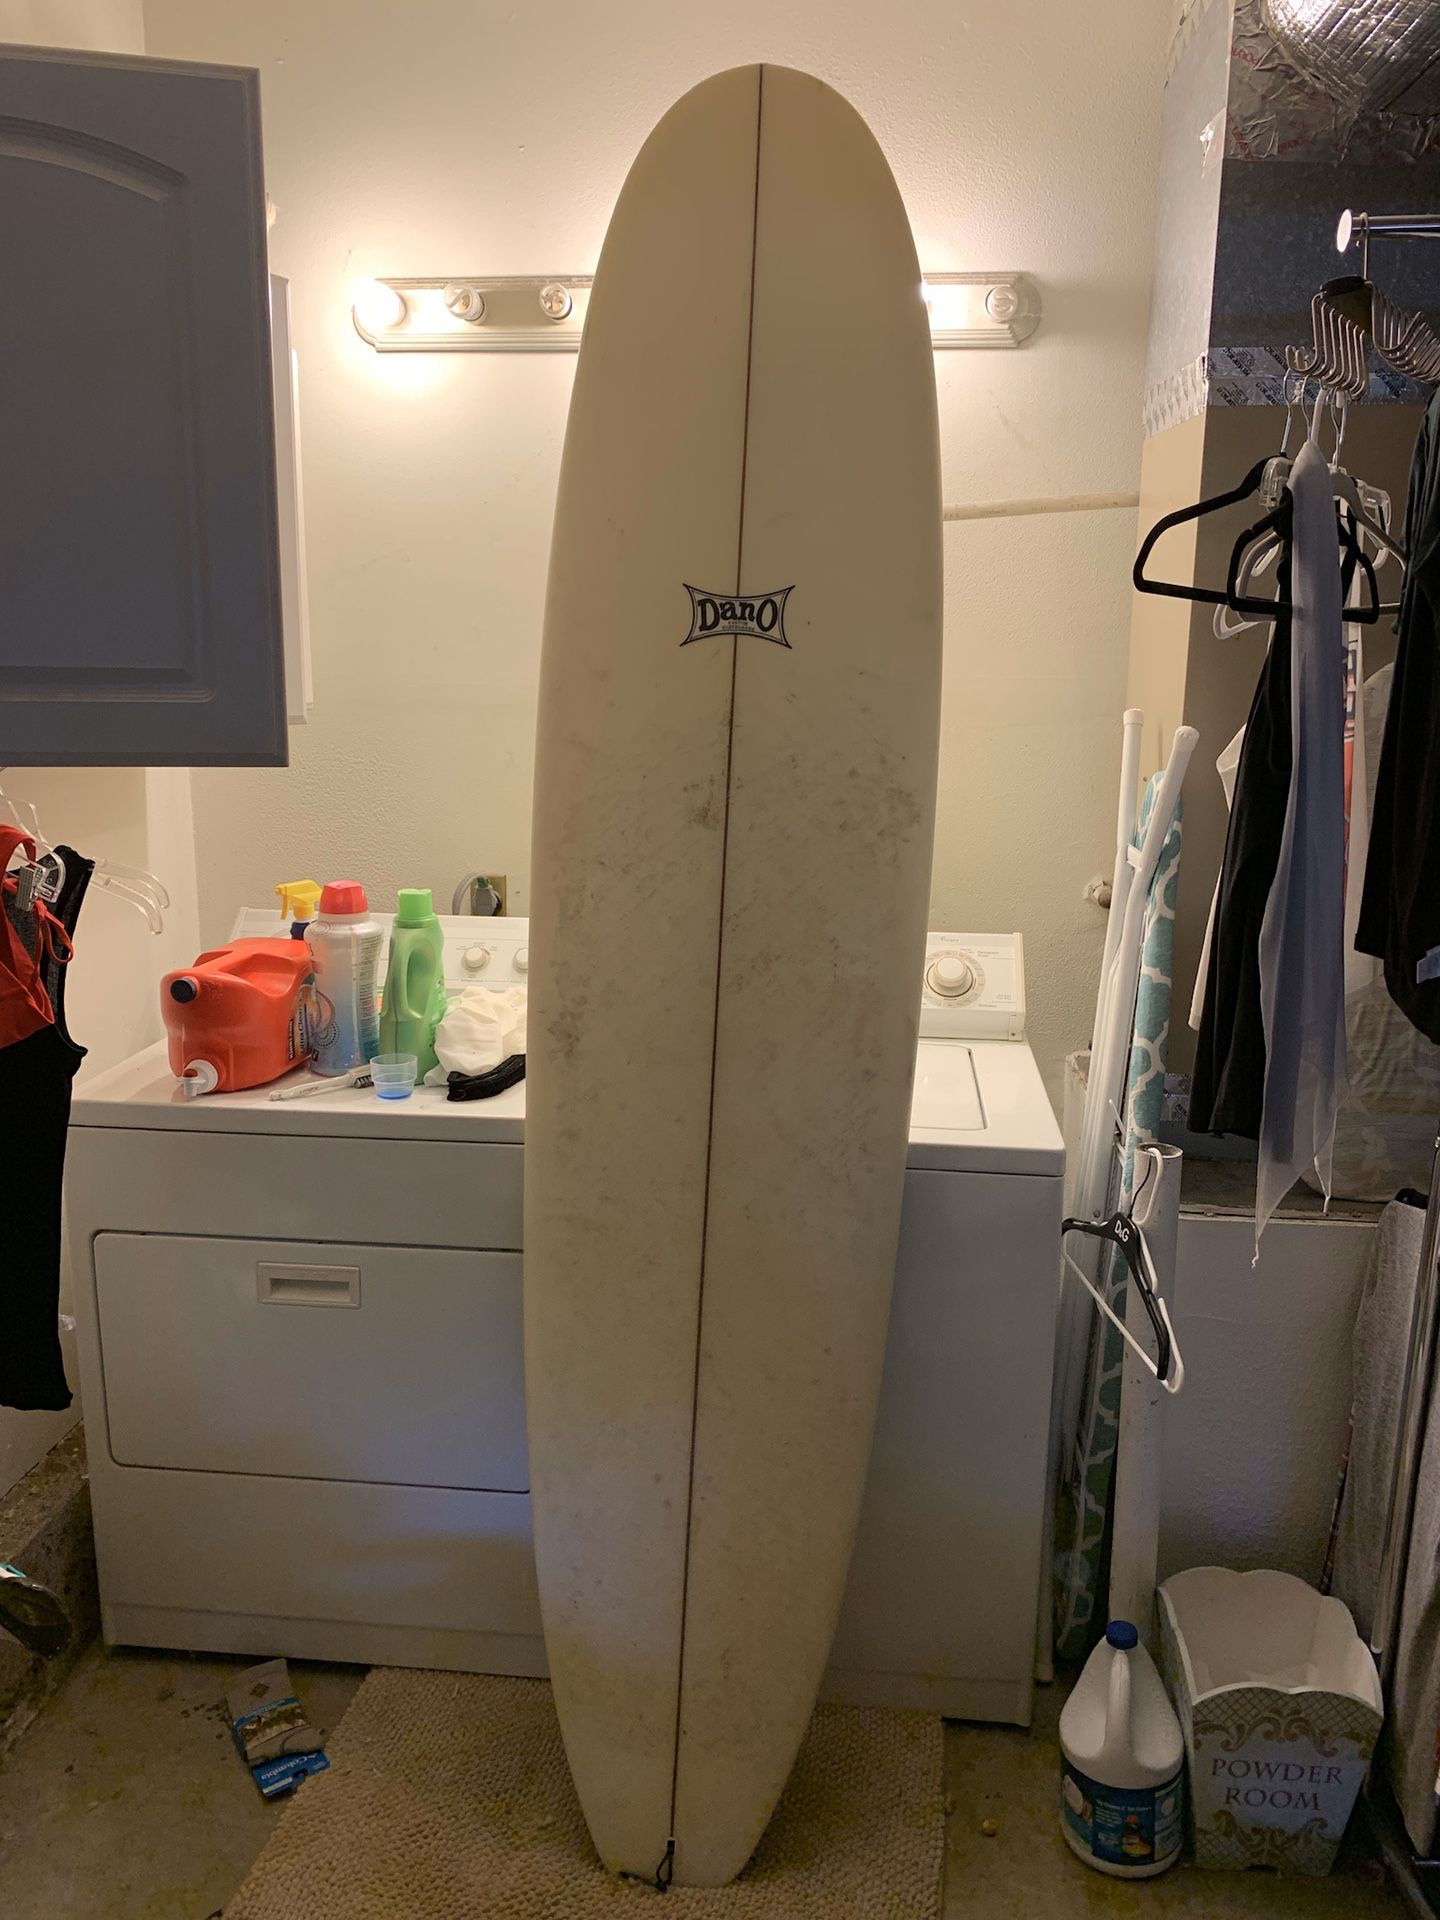 Dano Longboard Surfboard